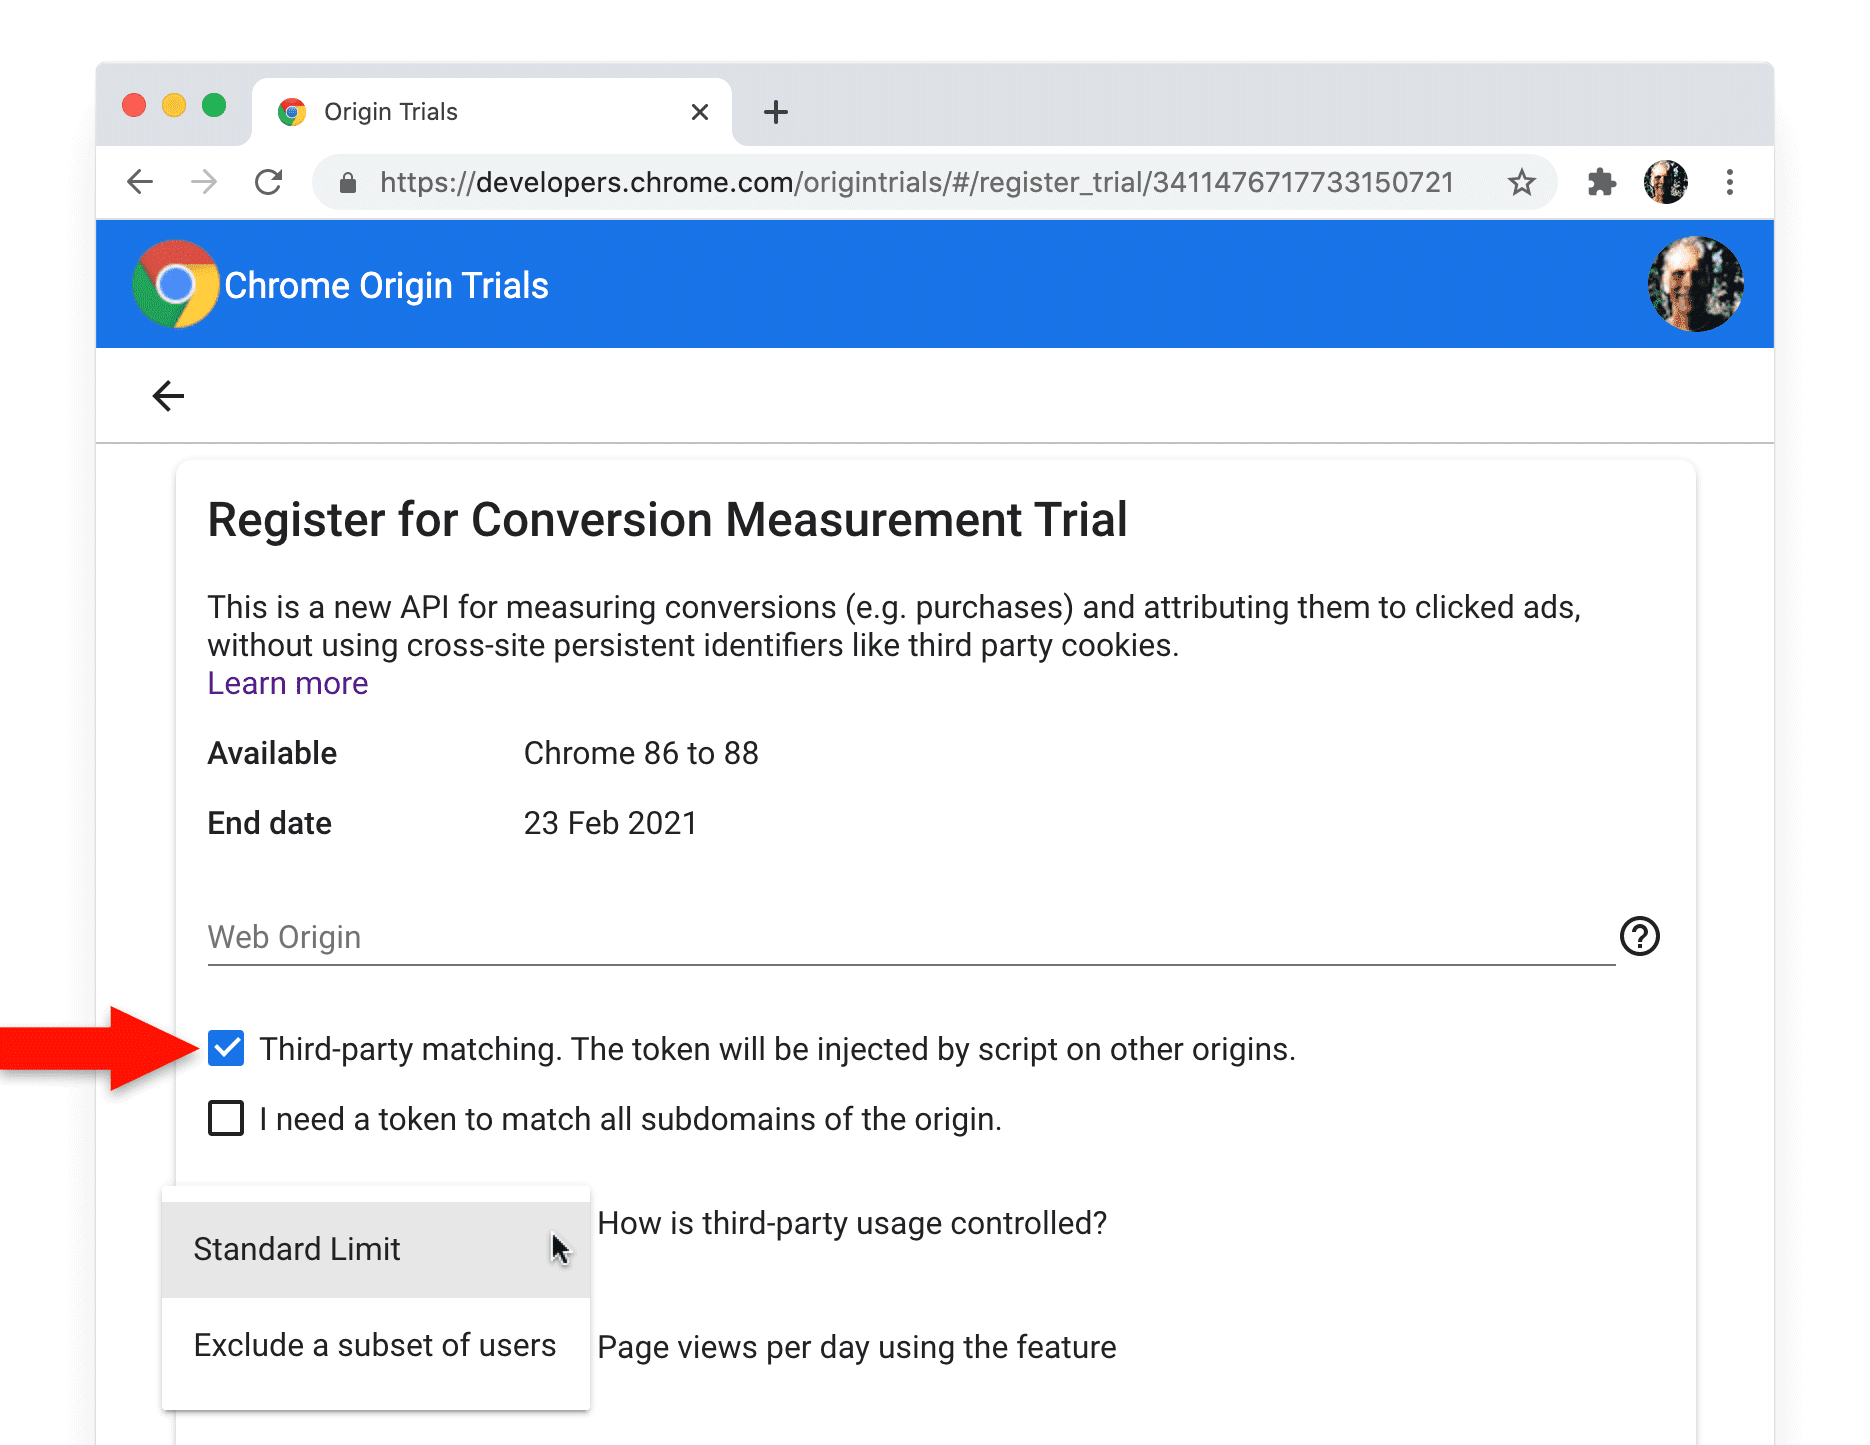 หน้าการลงทะเบียนทดลองใช้จากต้นทางของ Chrome สําหรับ Conversion Measurement API ที่มีการเลือกช่องทําเครื่องหมายการจับคู่ของบุคคลที่สามไว้